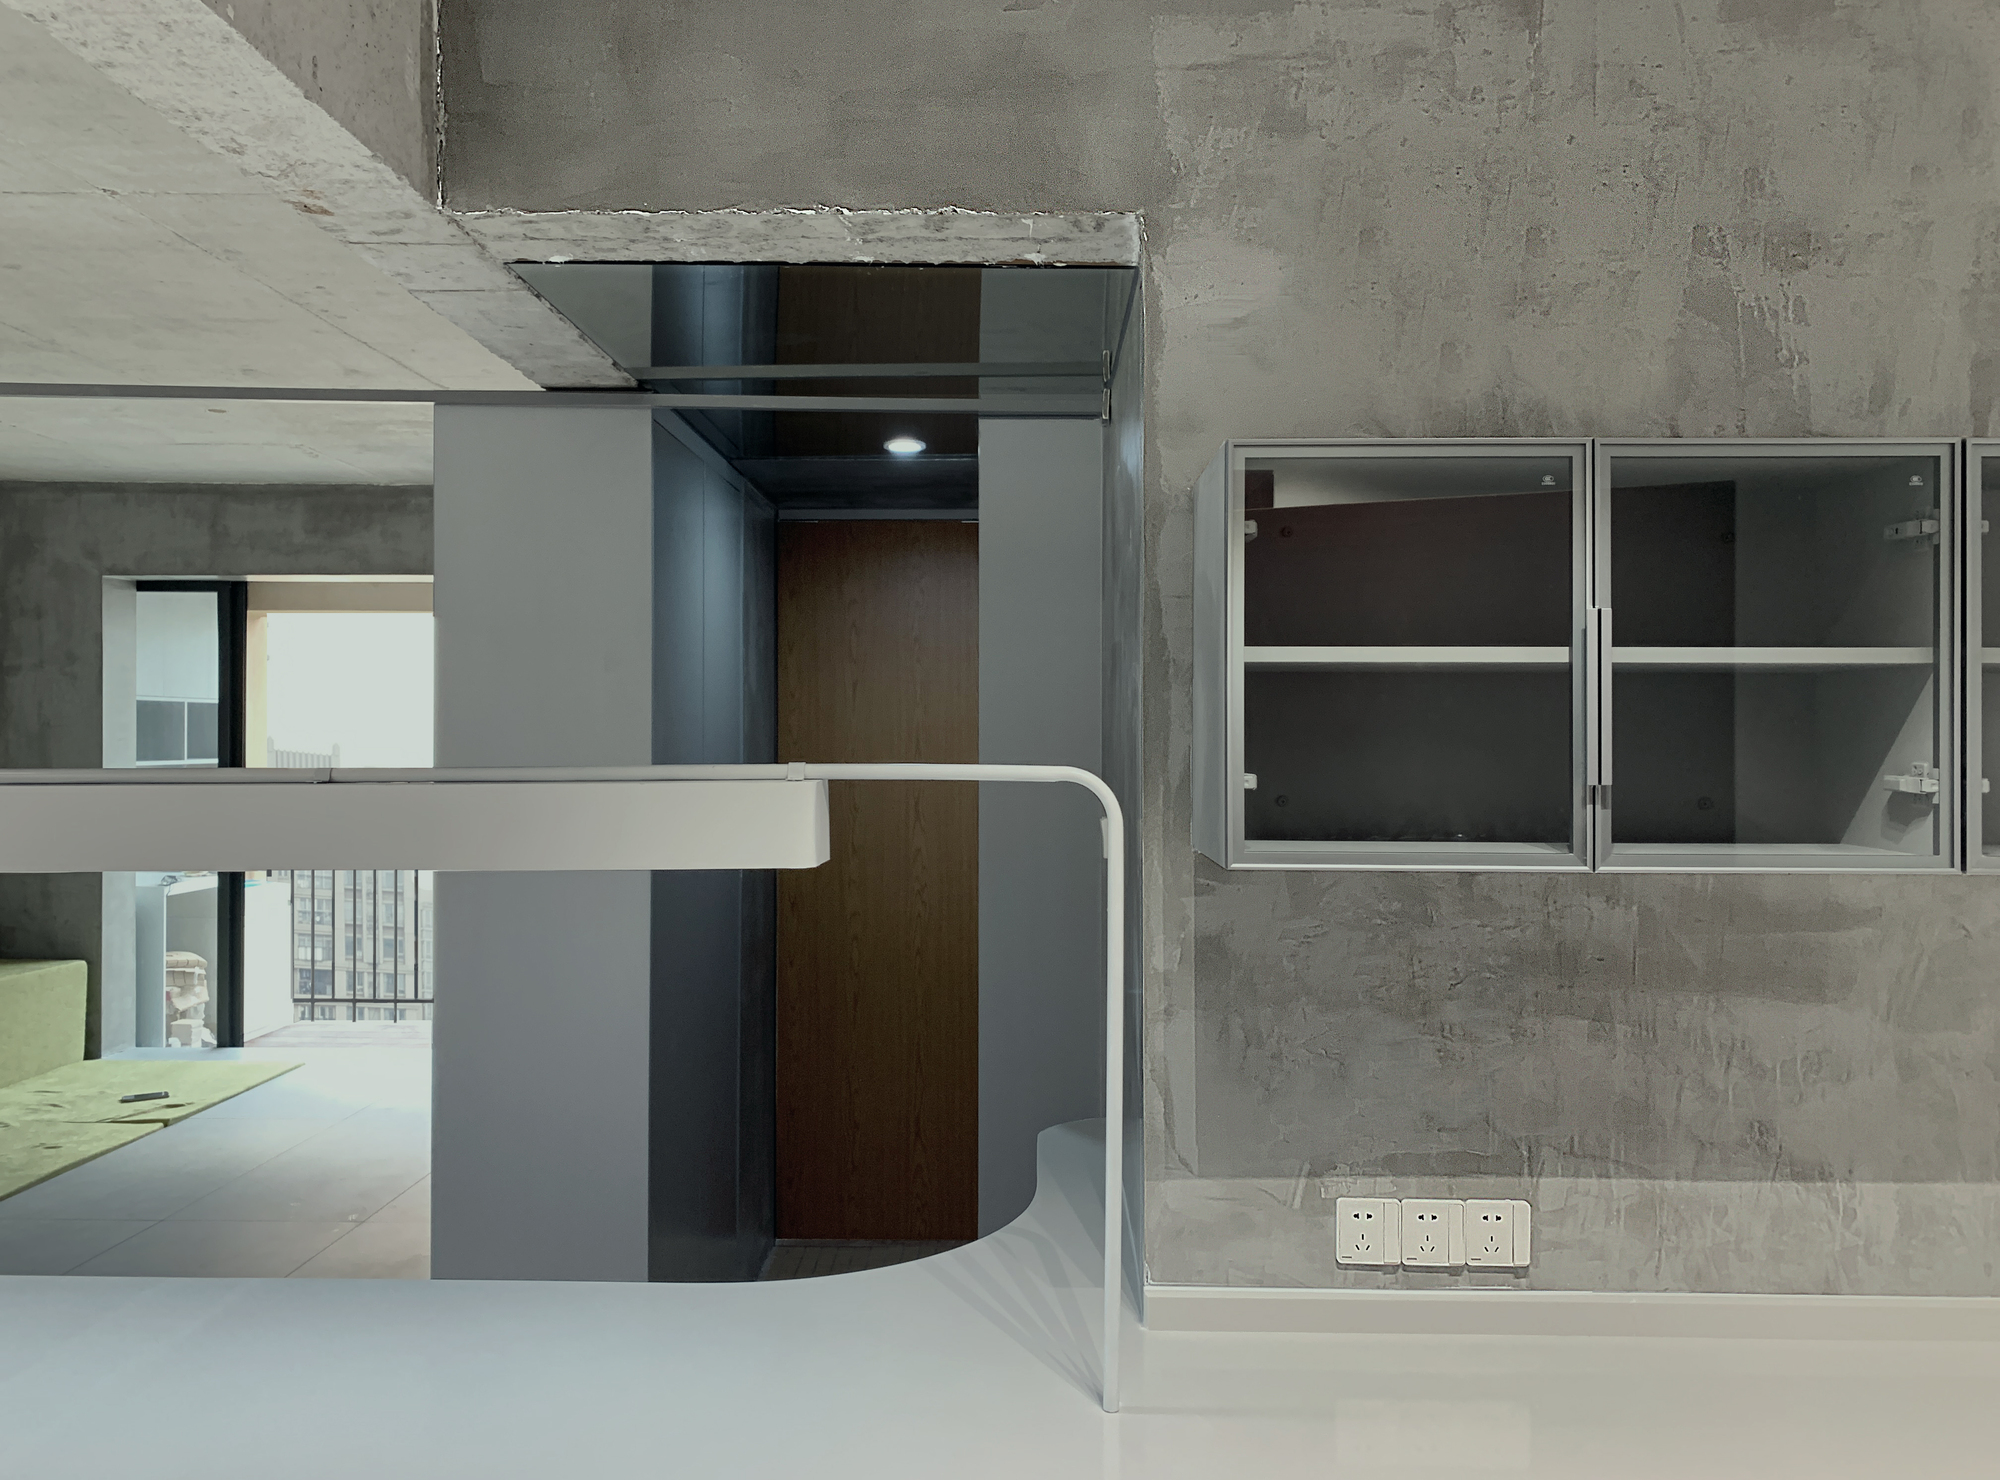 图片[2]|居屋2002号公寓 / 阿穆隆设计工作室|ART-Arrakis | 建筑室内设计的创新与灵感